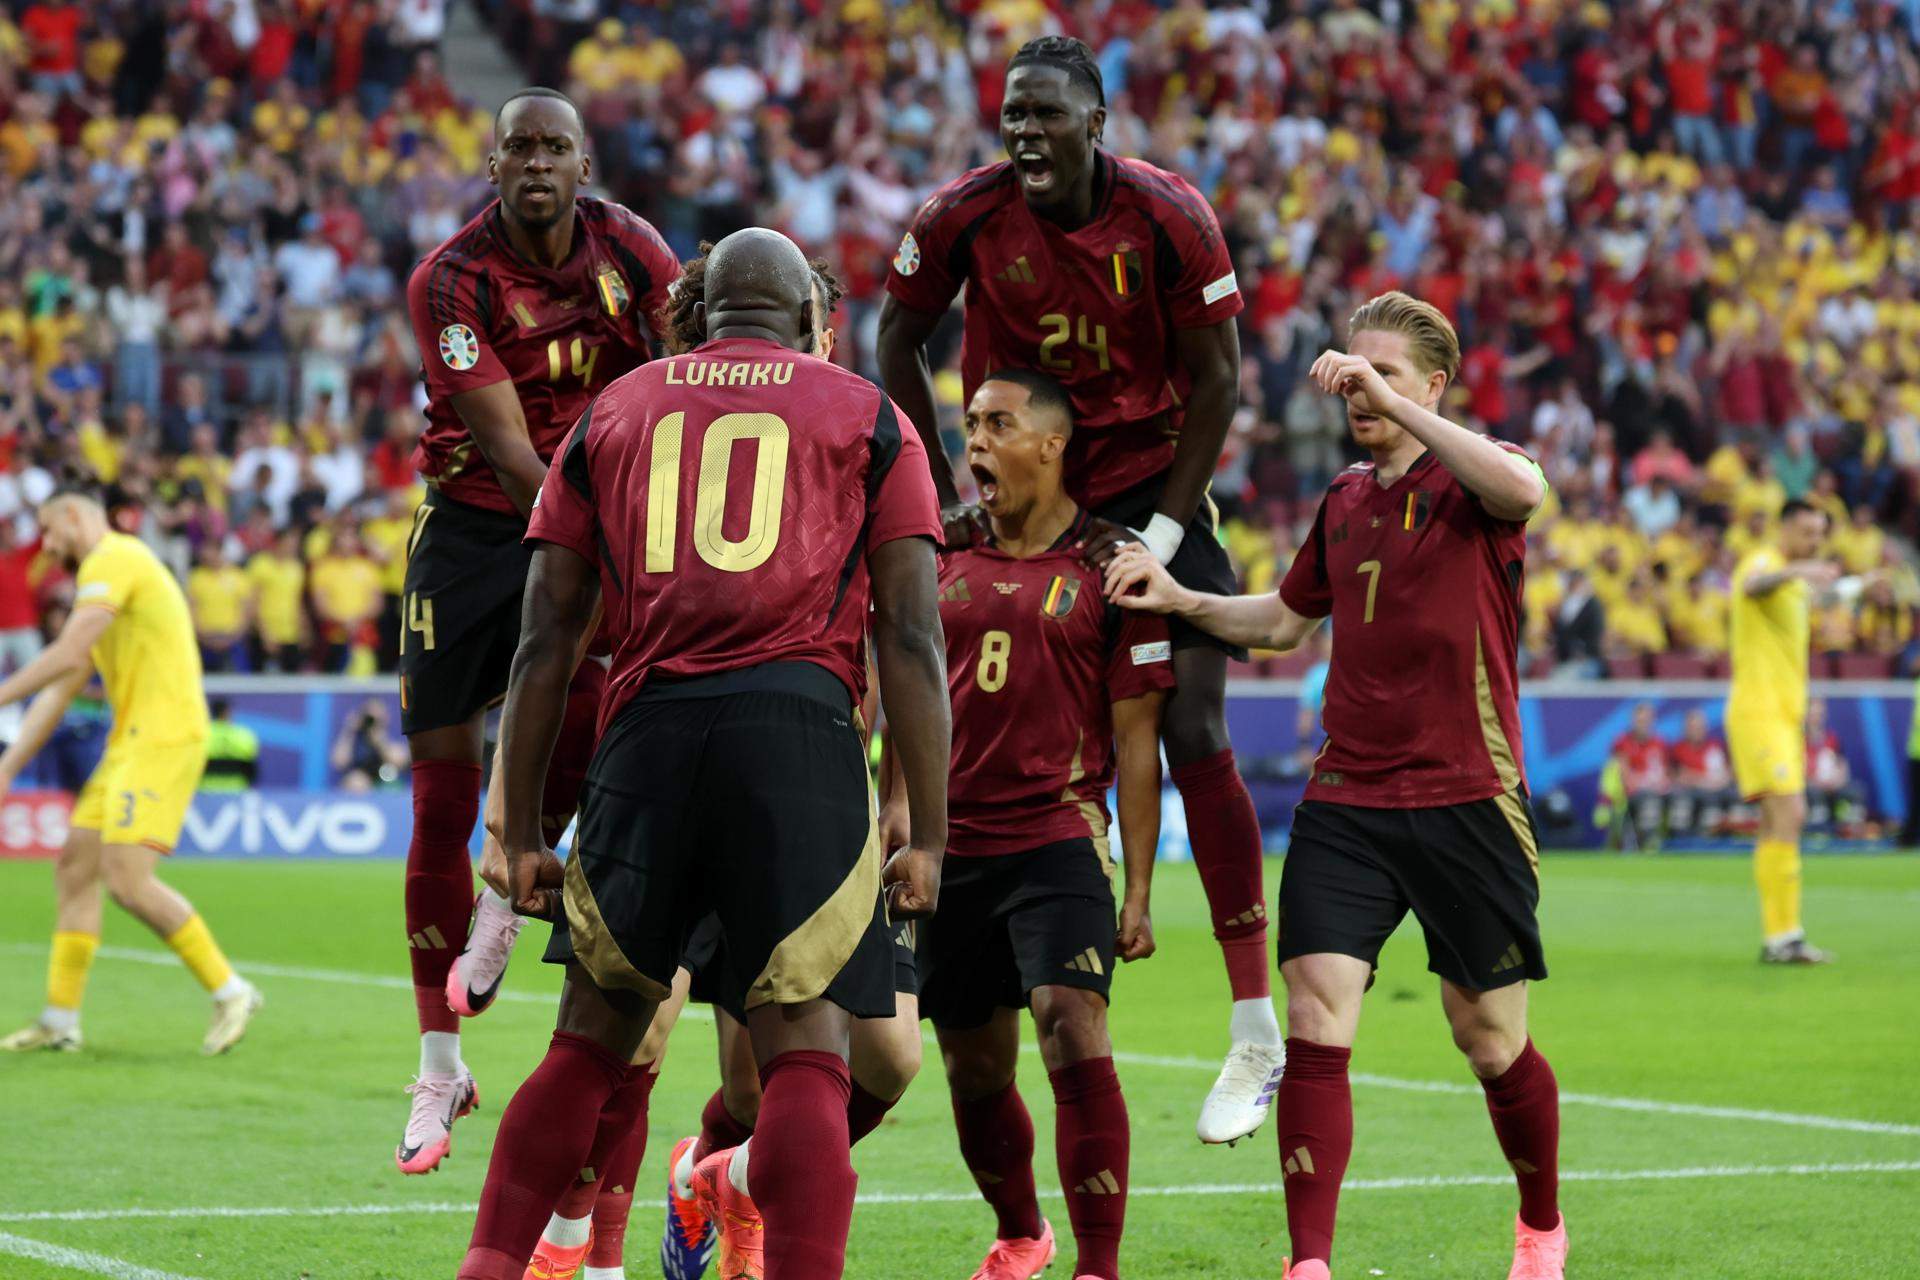 Bélgica salva su primer 'match ball' con una victoria ante Rumanía en un partido apasionante (2-0)